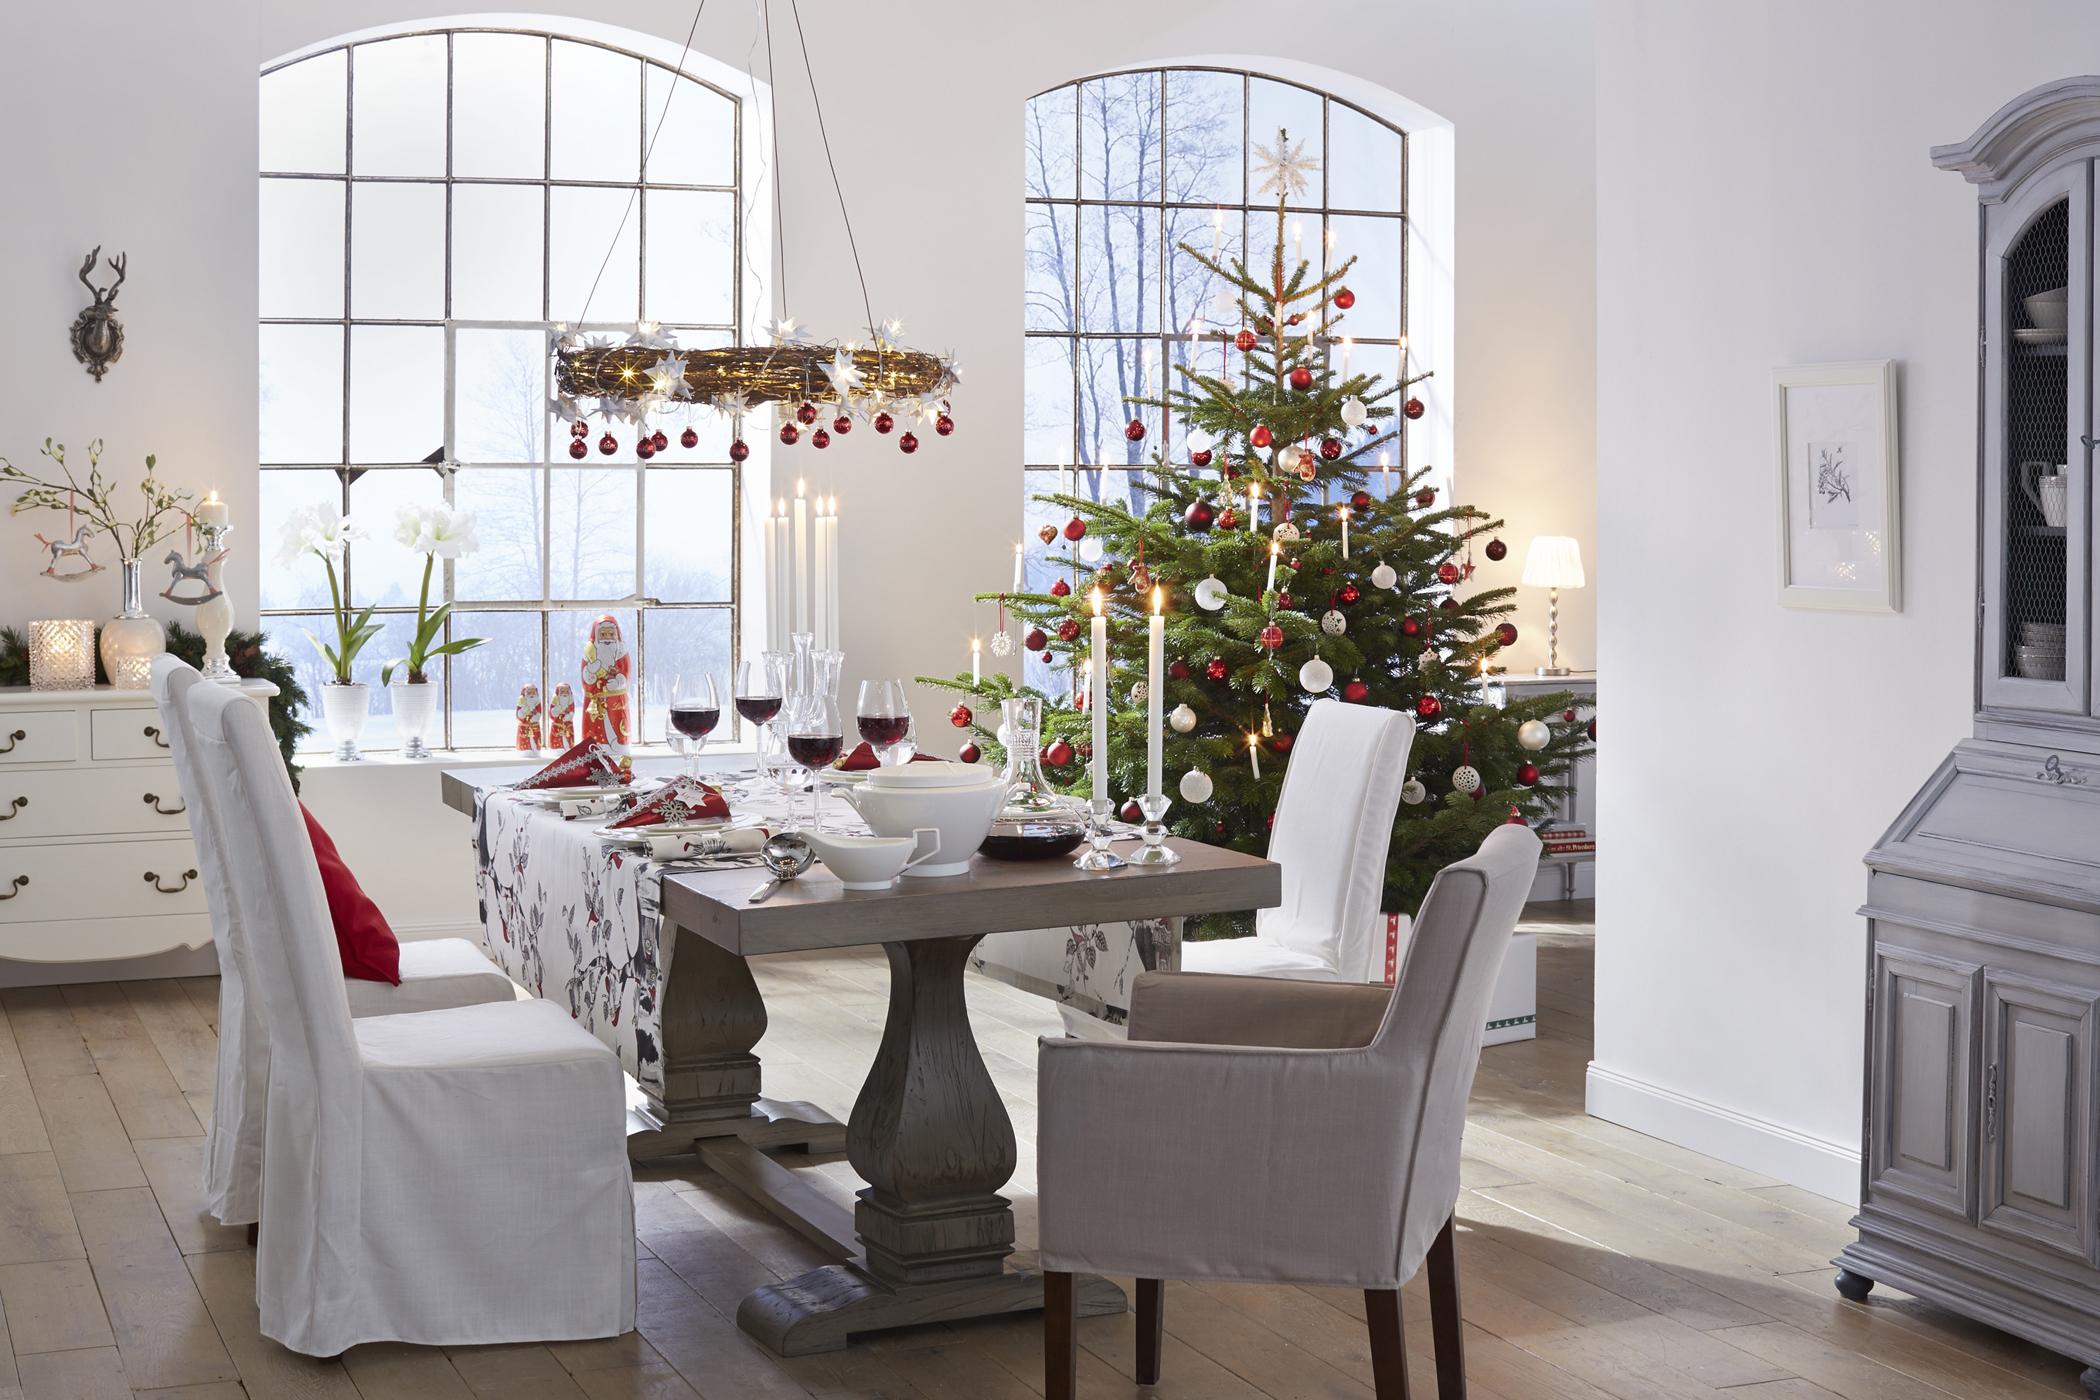 Tischdeko für Weihnachten #esstisch #schrank #kommode #geschirr #weihnachtsdeko #tischdekowinter #tischdekoweihnachten ©Villeroy & Boch